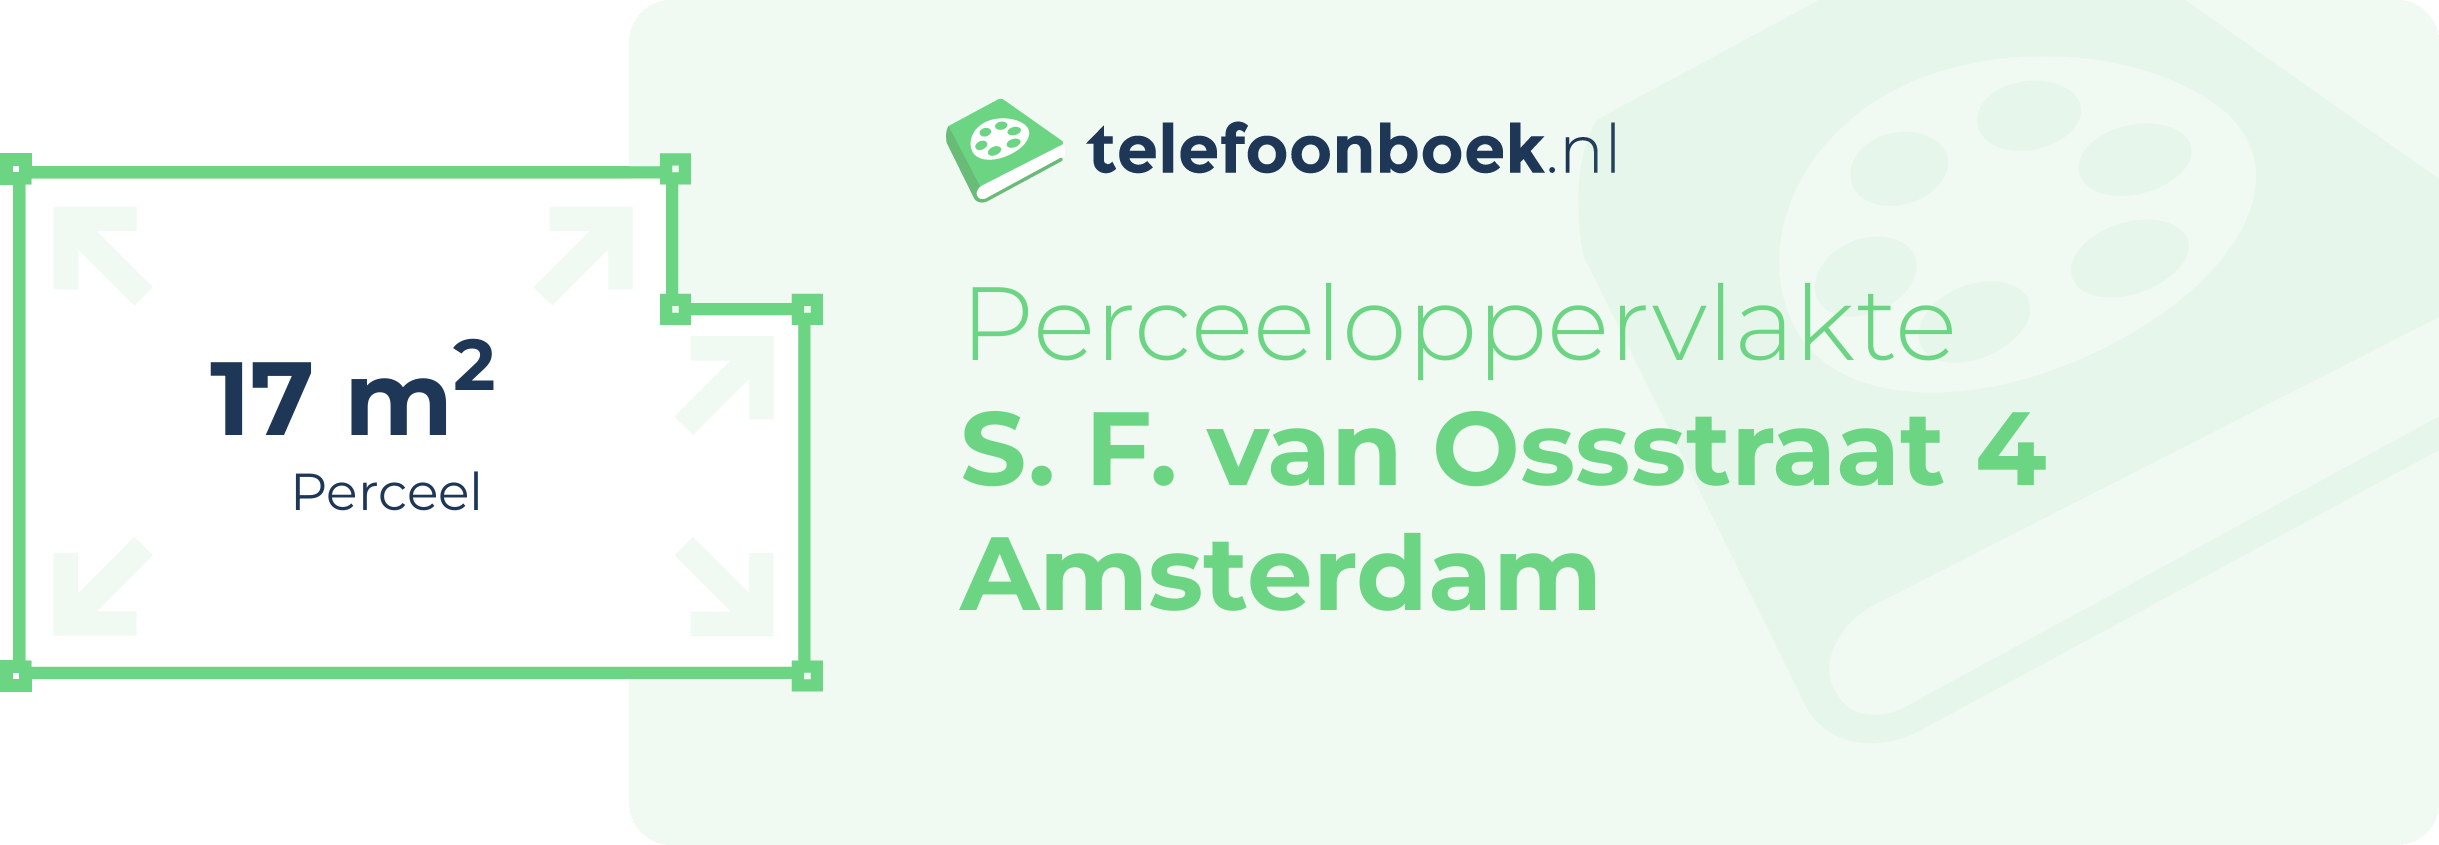 Perceeloppervlakte S. F. Van Ossstraat 4 Amsterdam